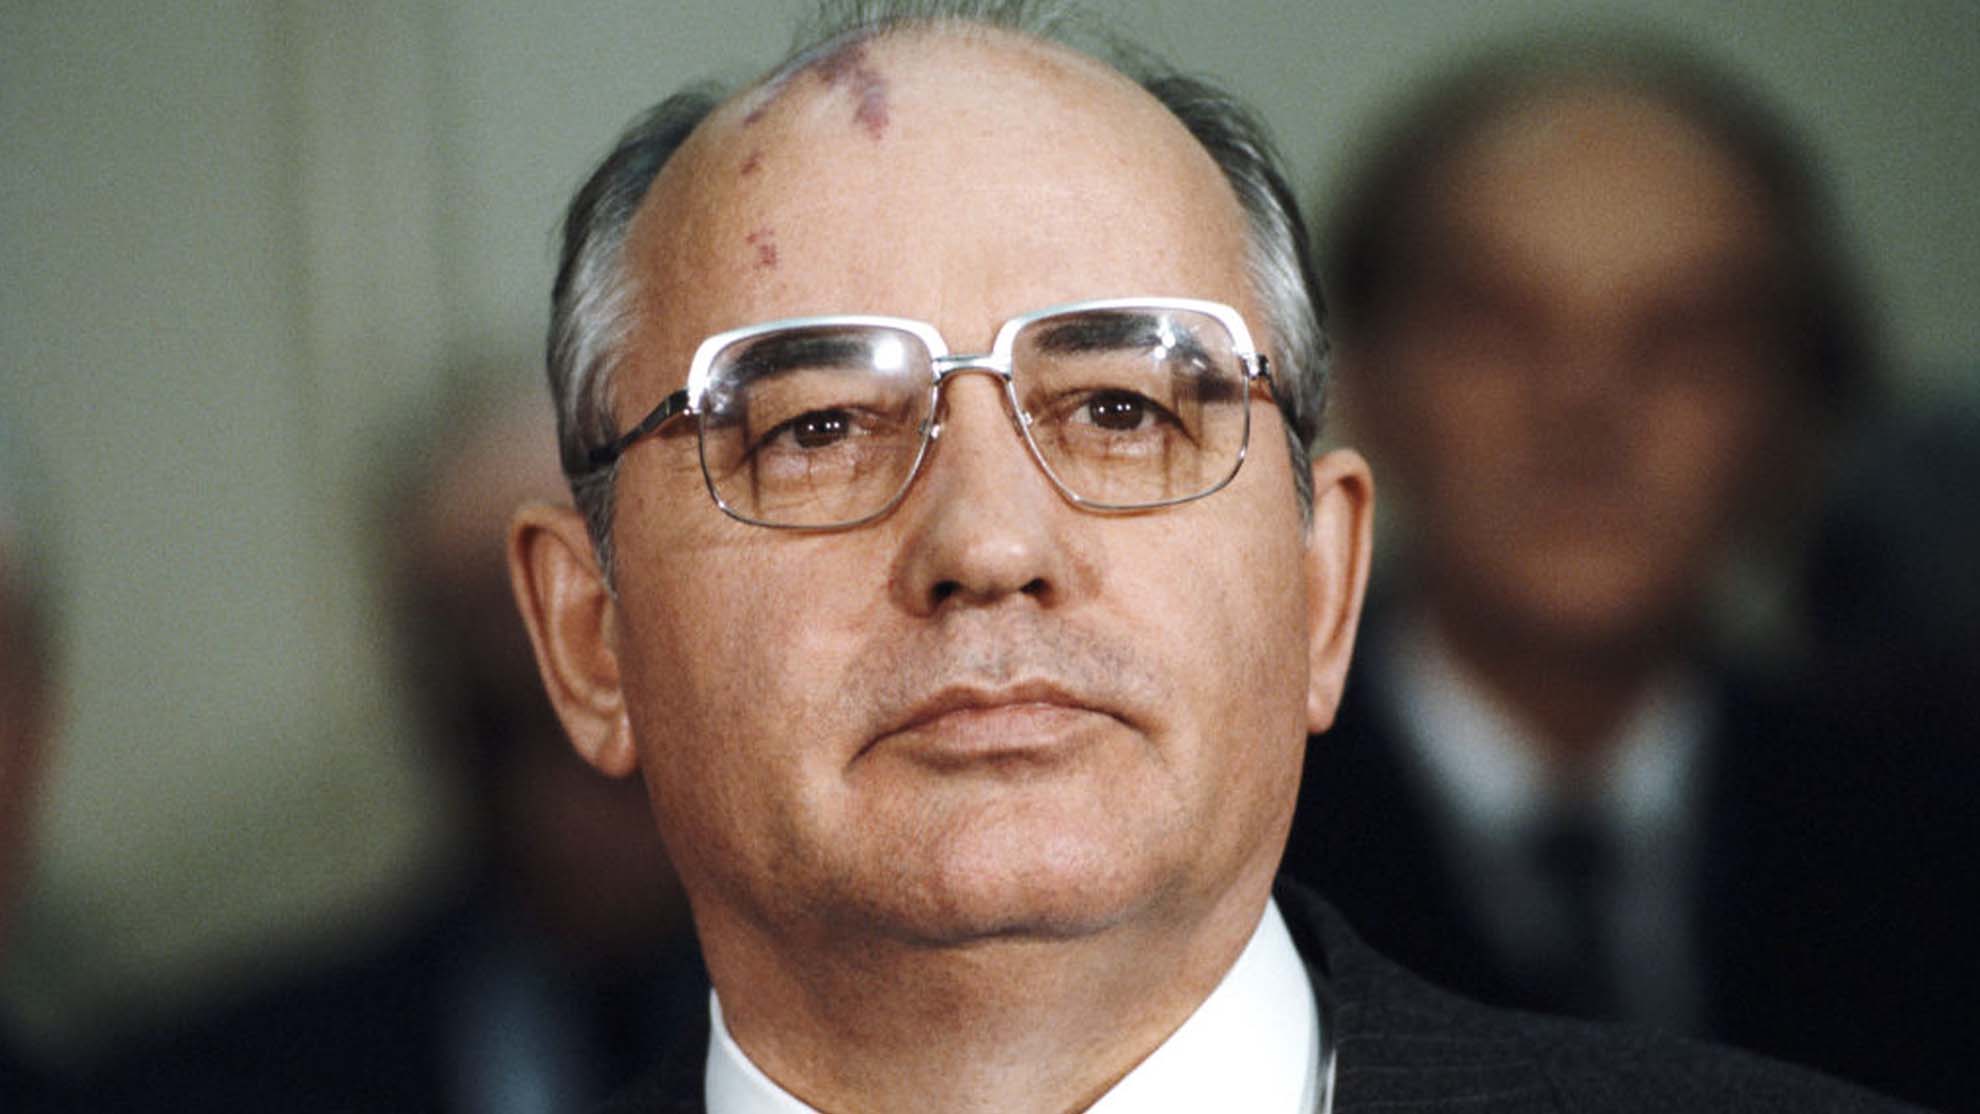 Muere a los 91 años el exlíder soviético Mijaíl Gorbachov, según reportes